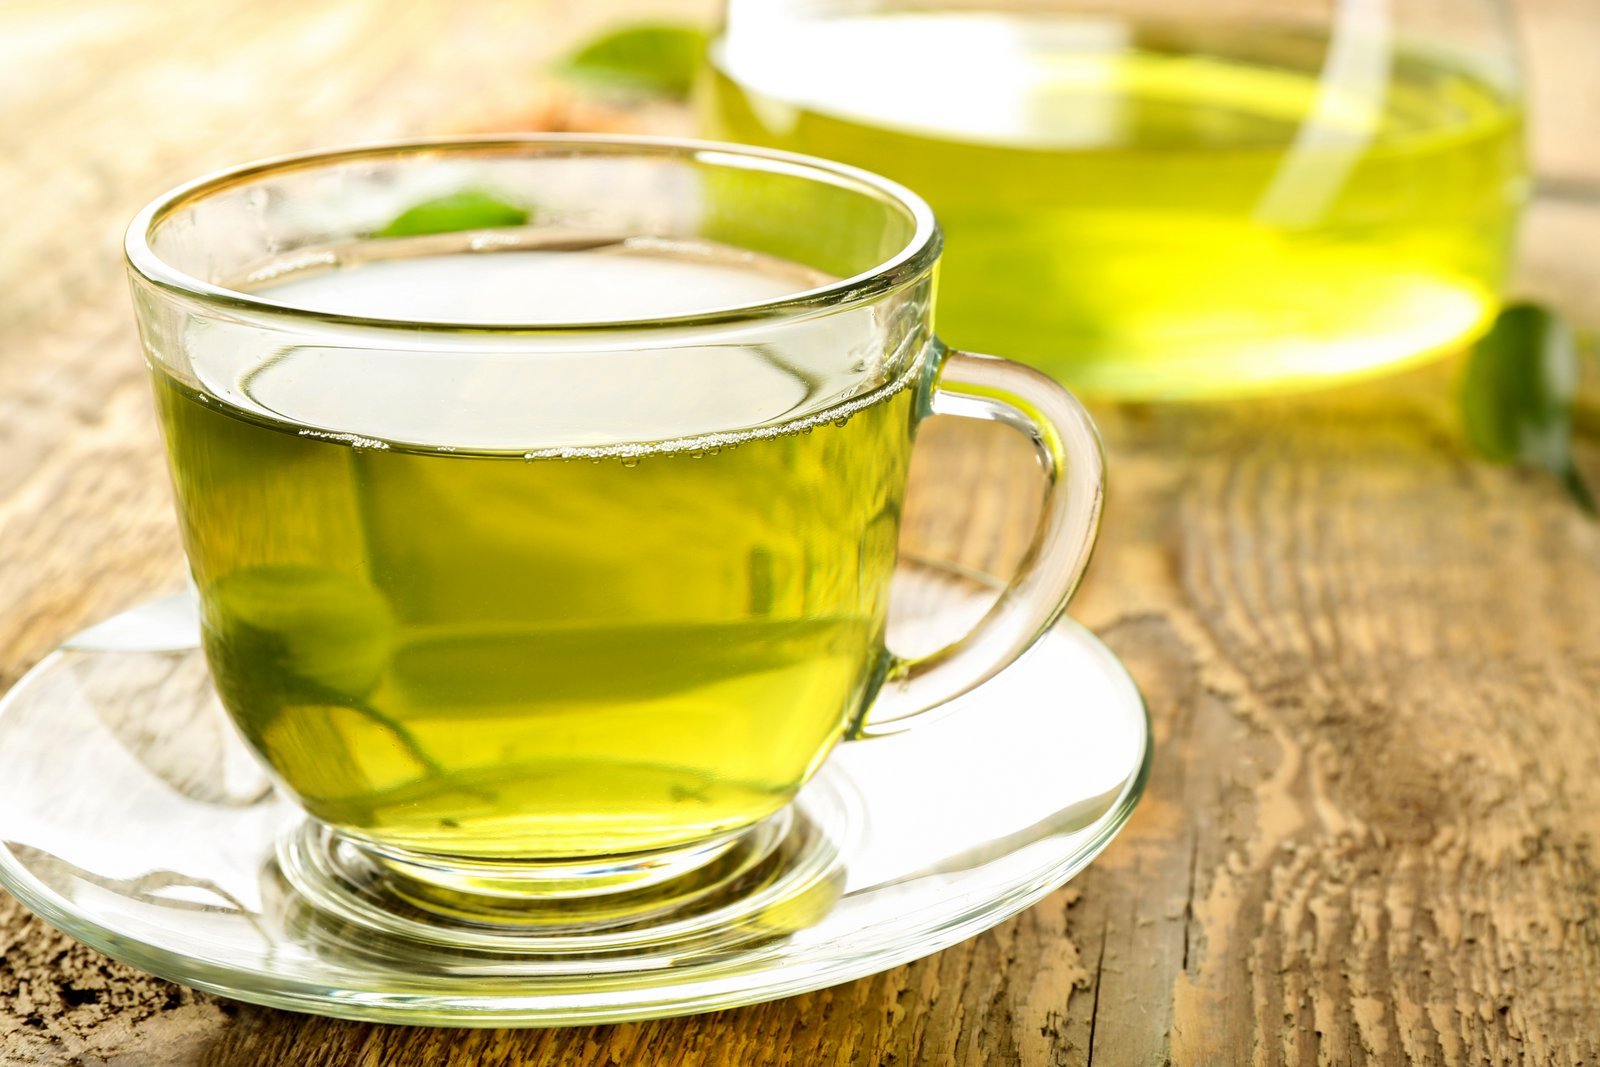 eu-warns-about-green-tea-supplements